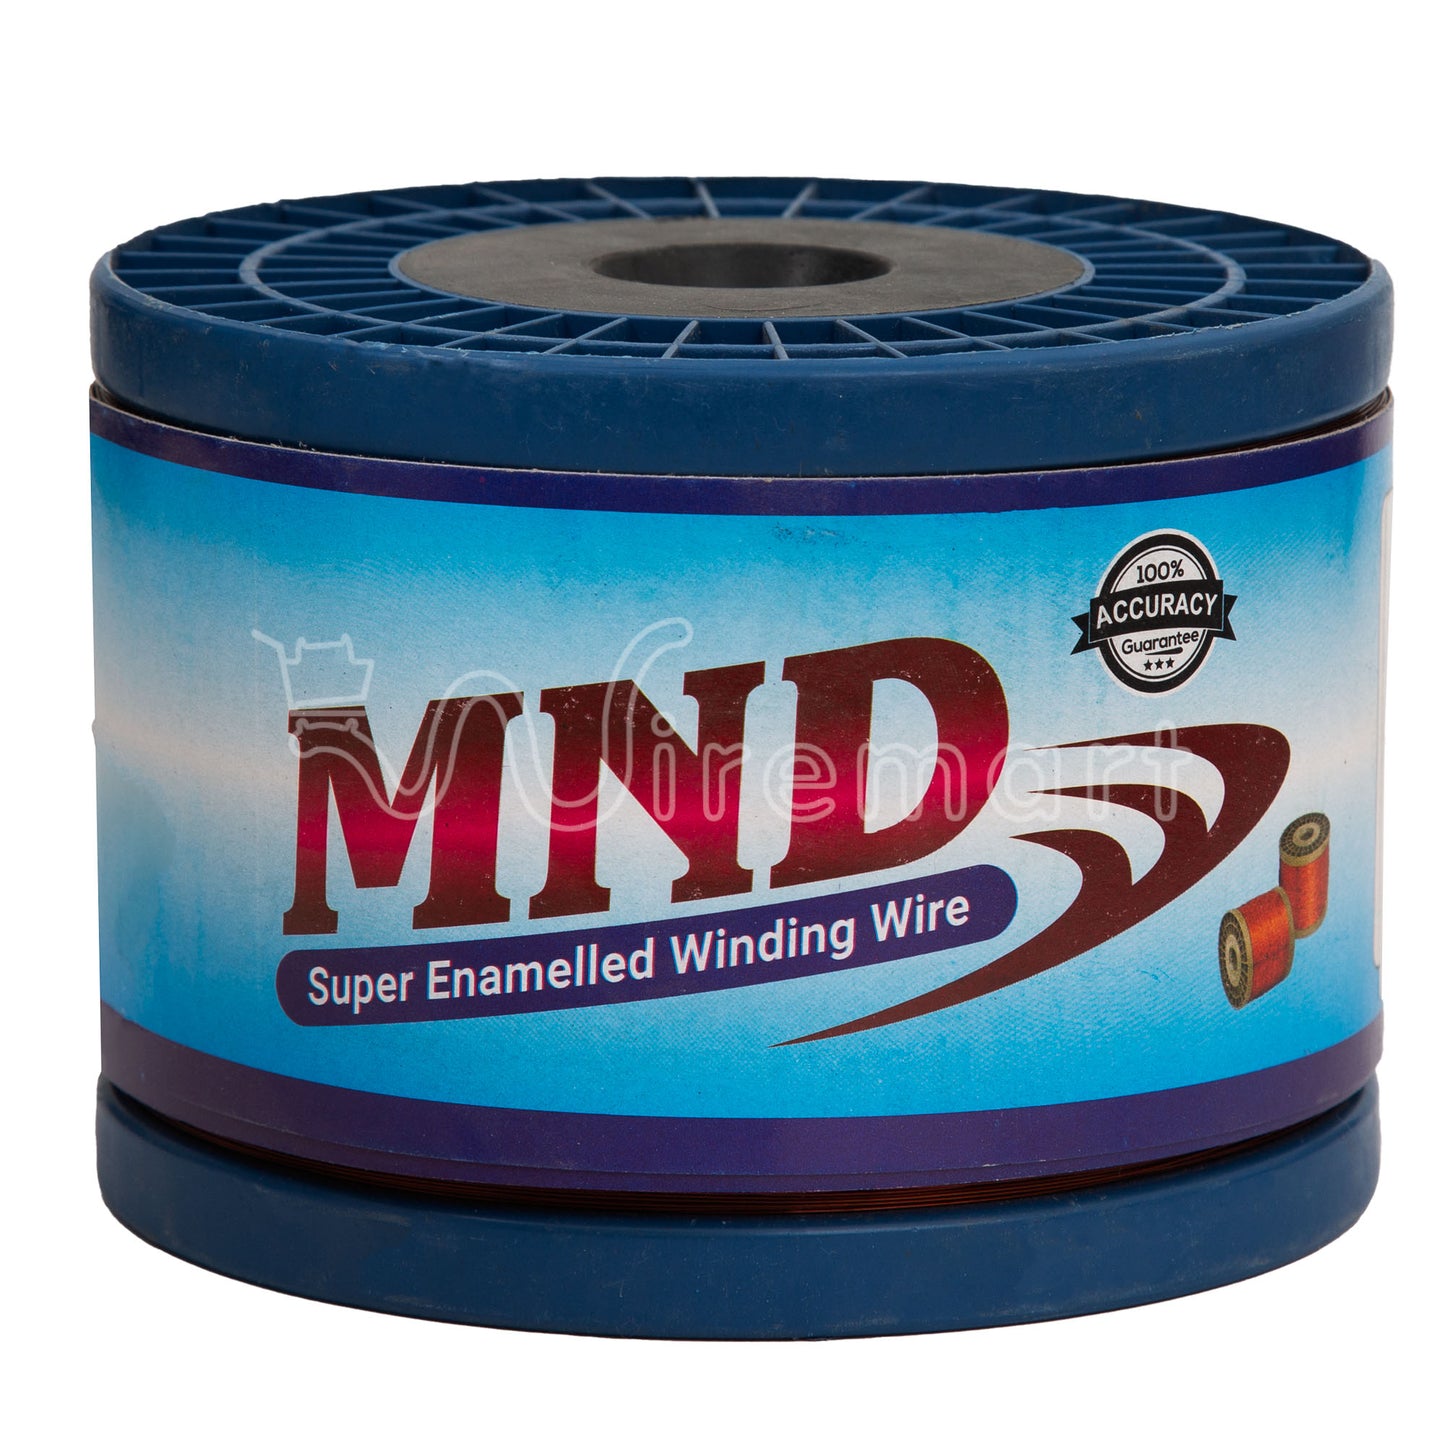 Aluminium Winding Wire Brand MND